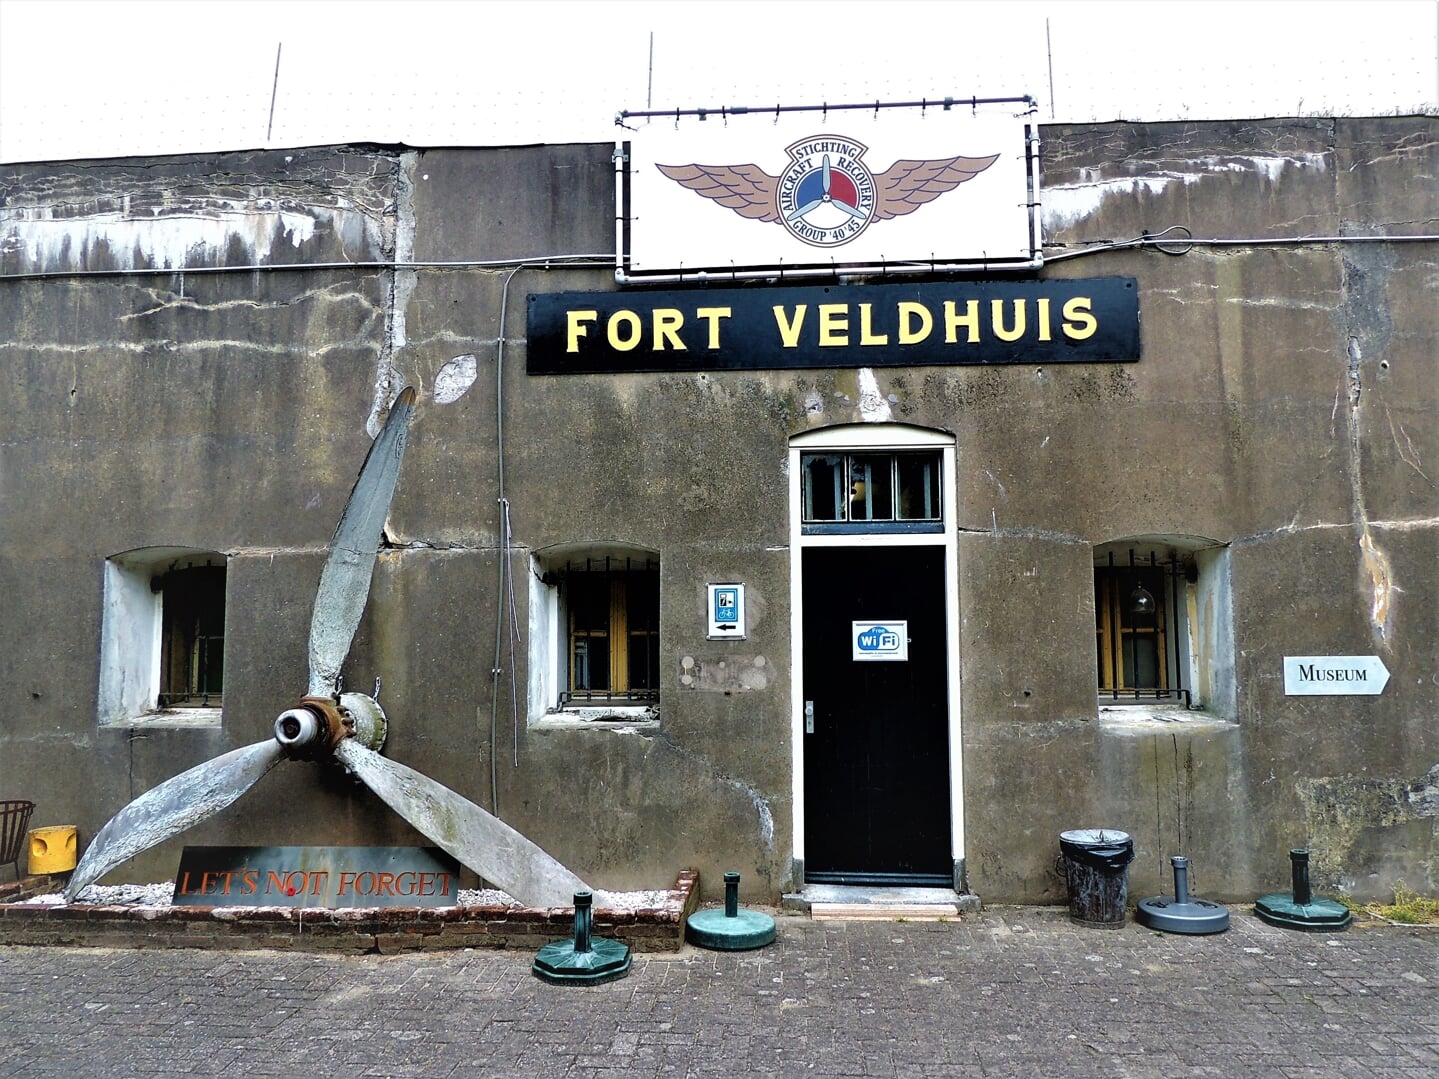 Fort Veldhuis in Beverwijk.